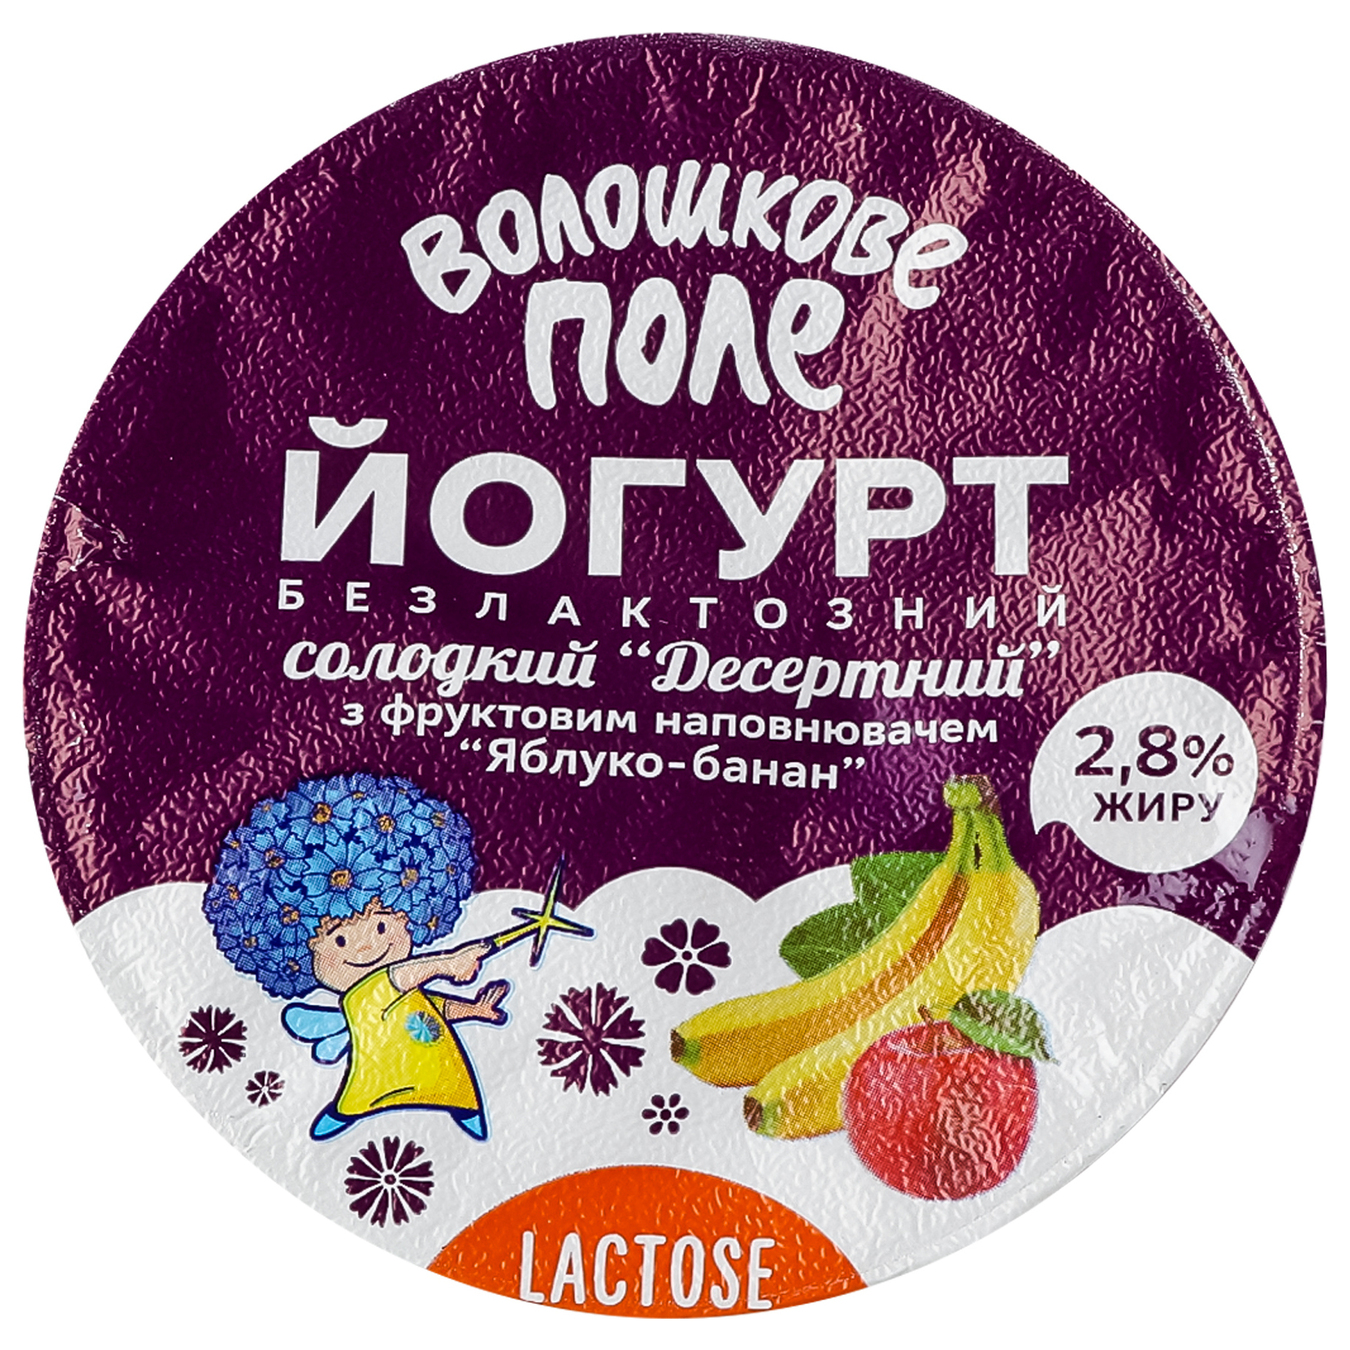 Йогурт Волошковое поле яблоко-банан безлактозный 2,8% стакан 140г 6